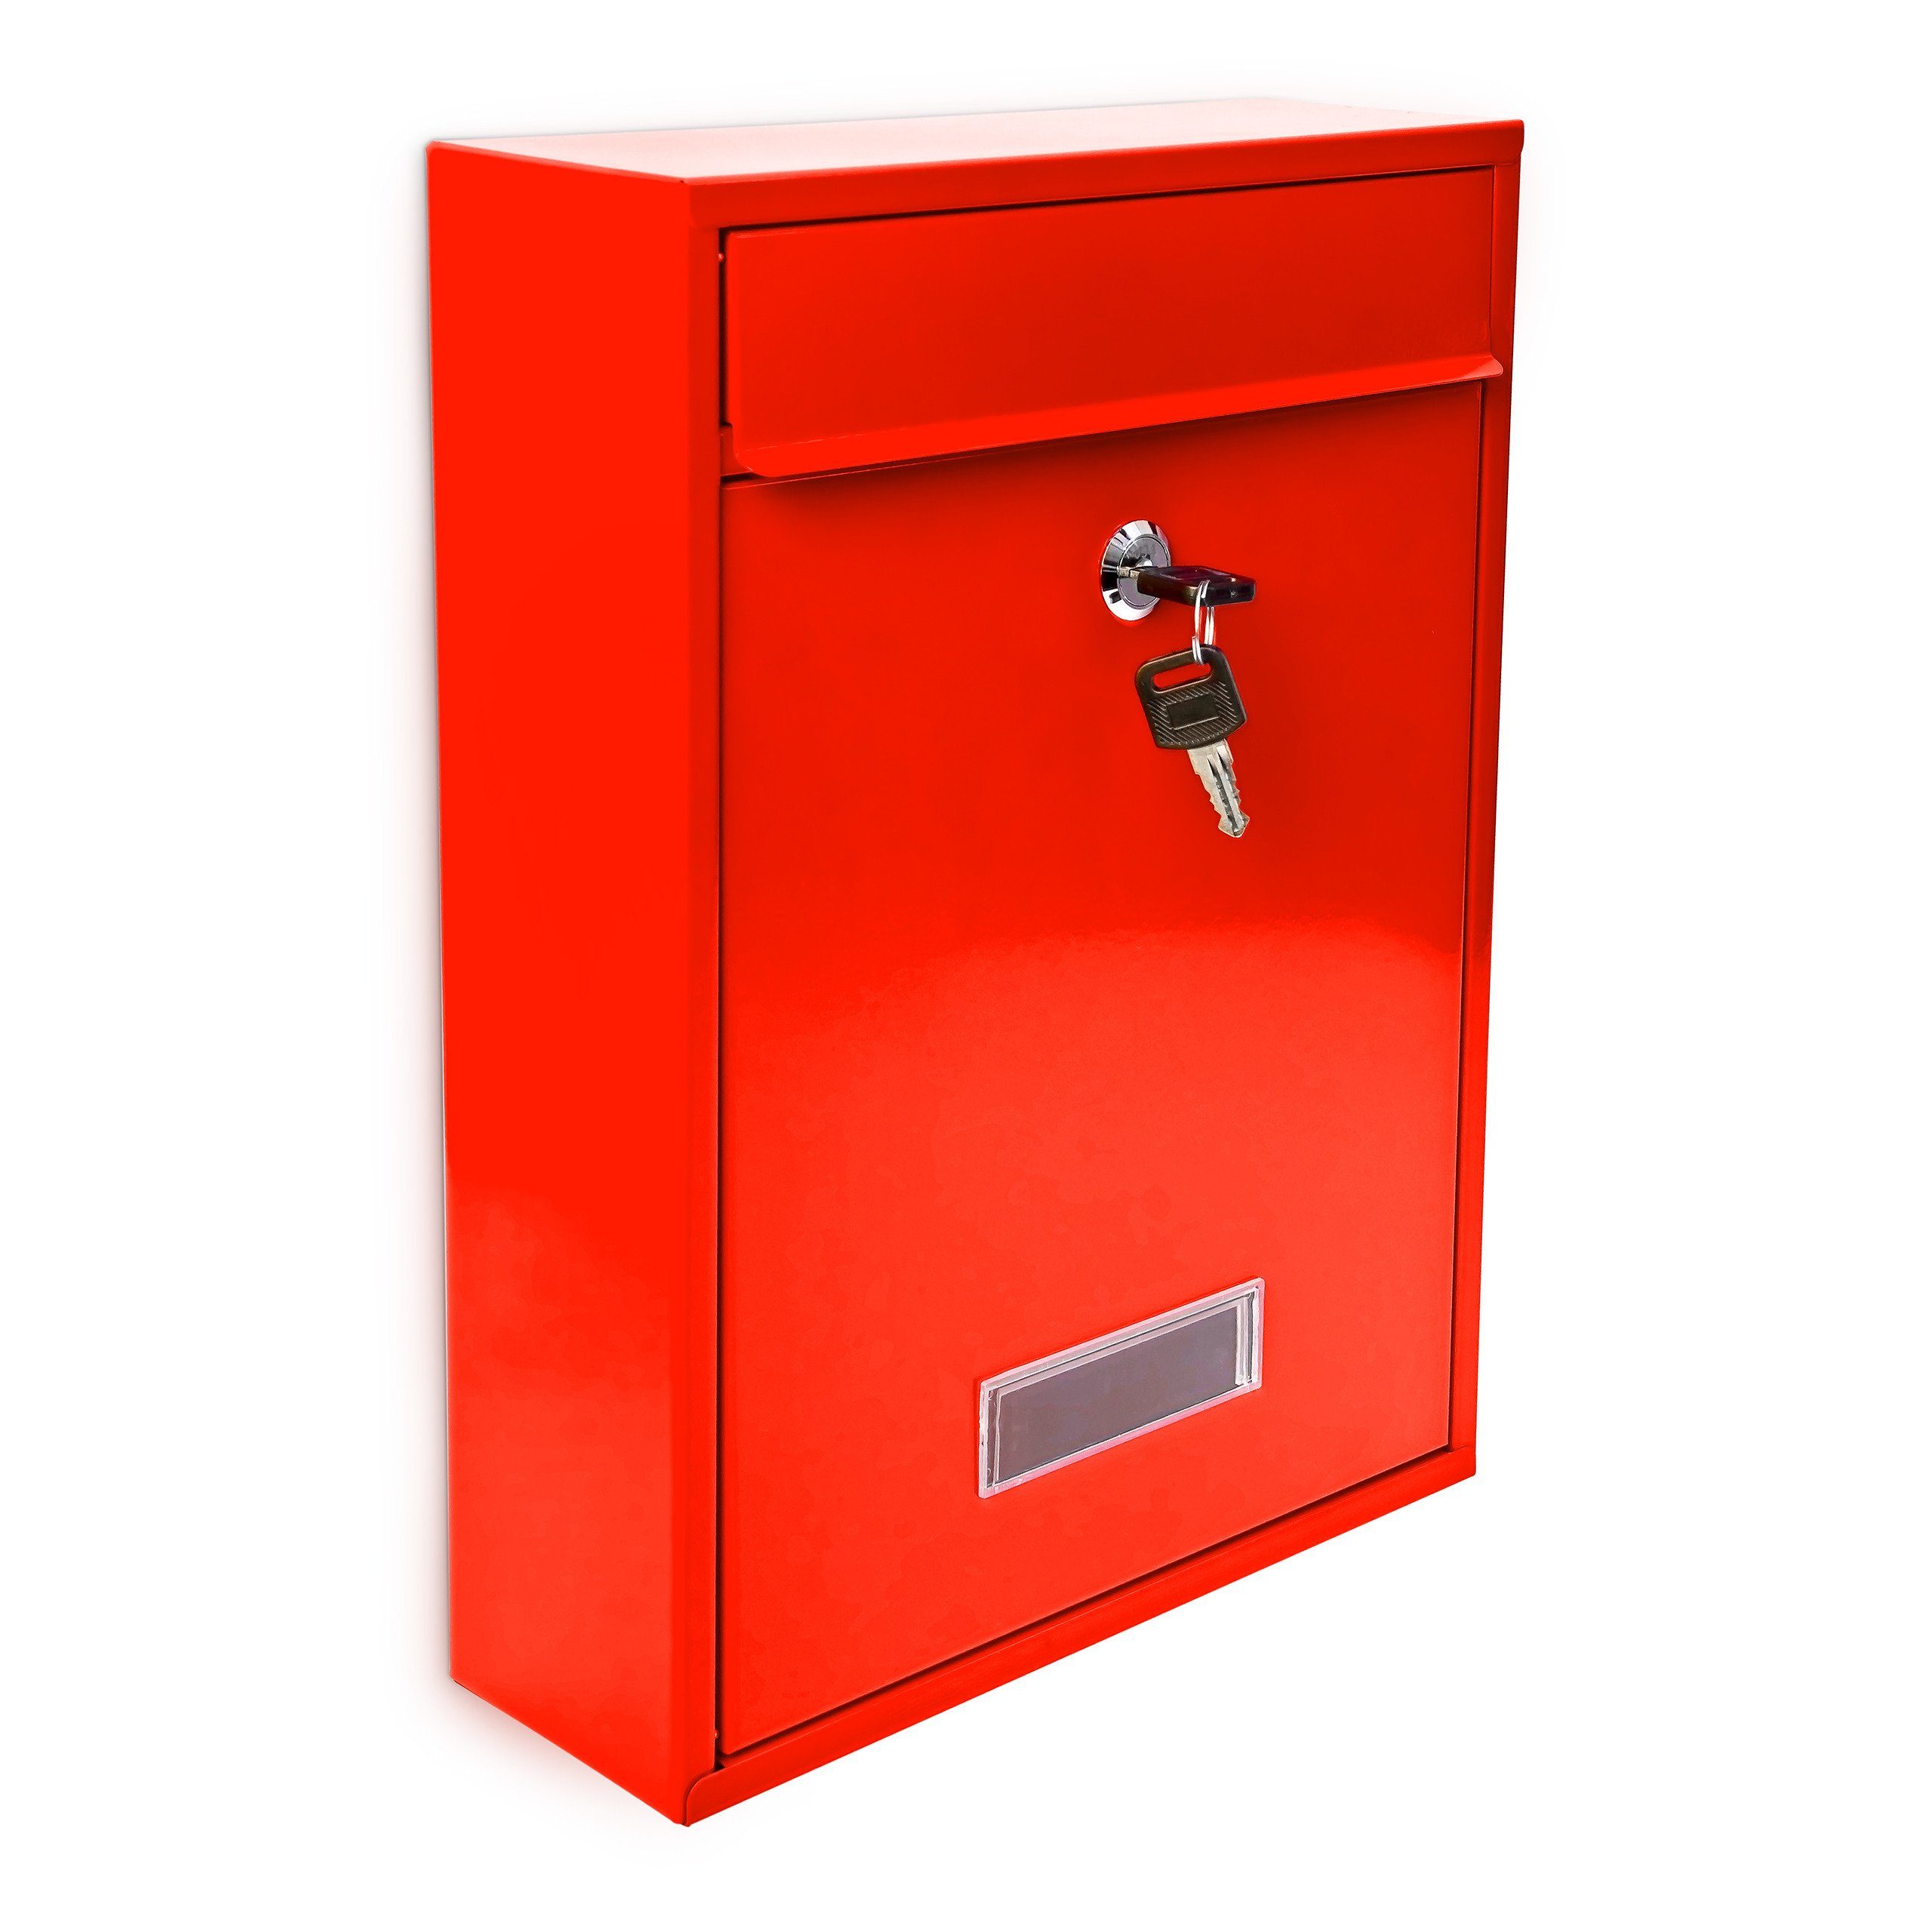 relaxdays Aufbewahrungsbox Briefkasten Design 35 cm Farbauswahl, Rot Rot Silber